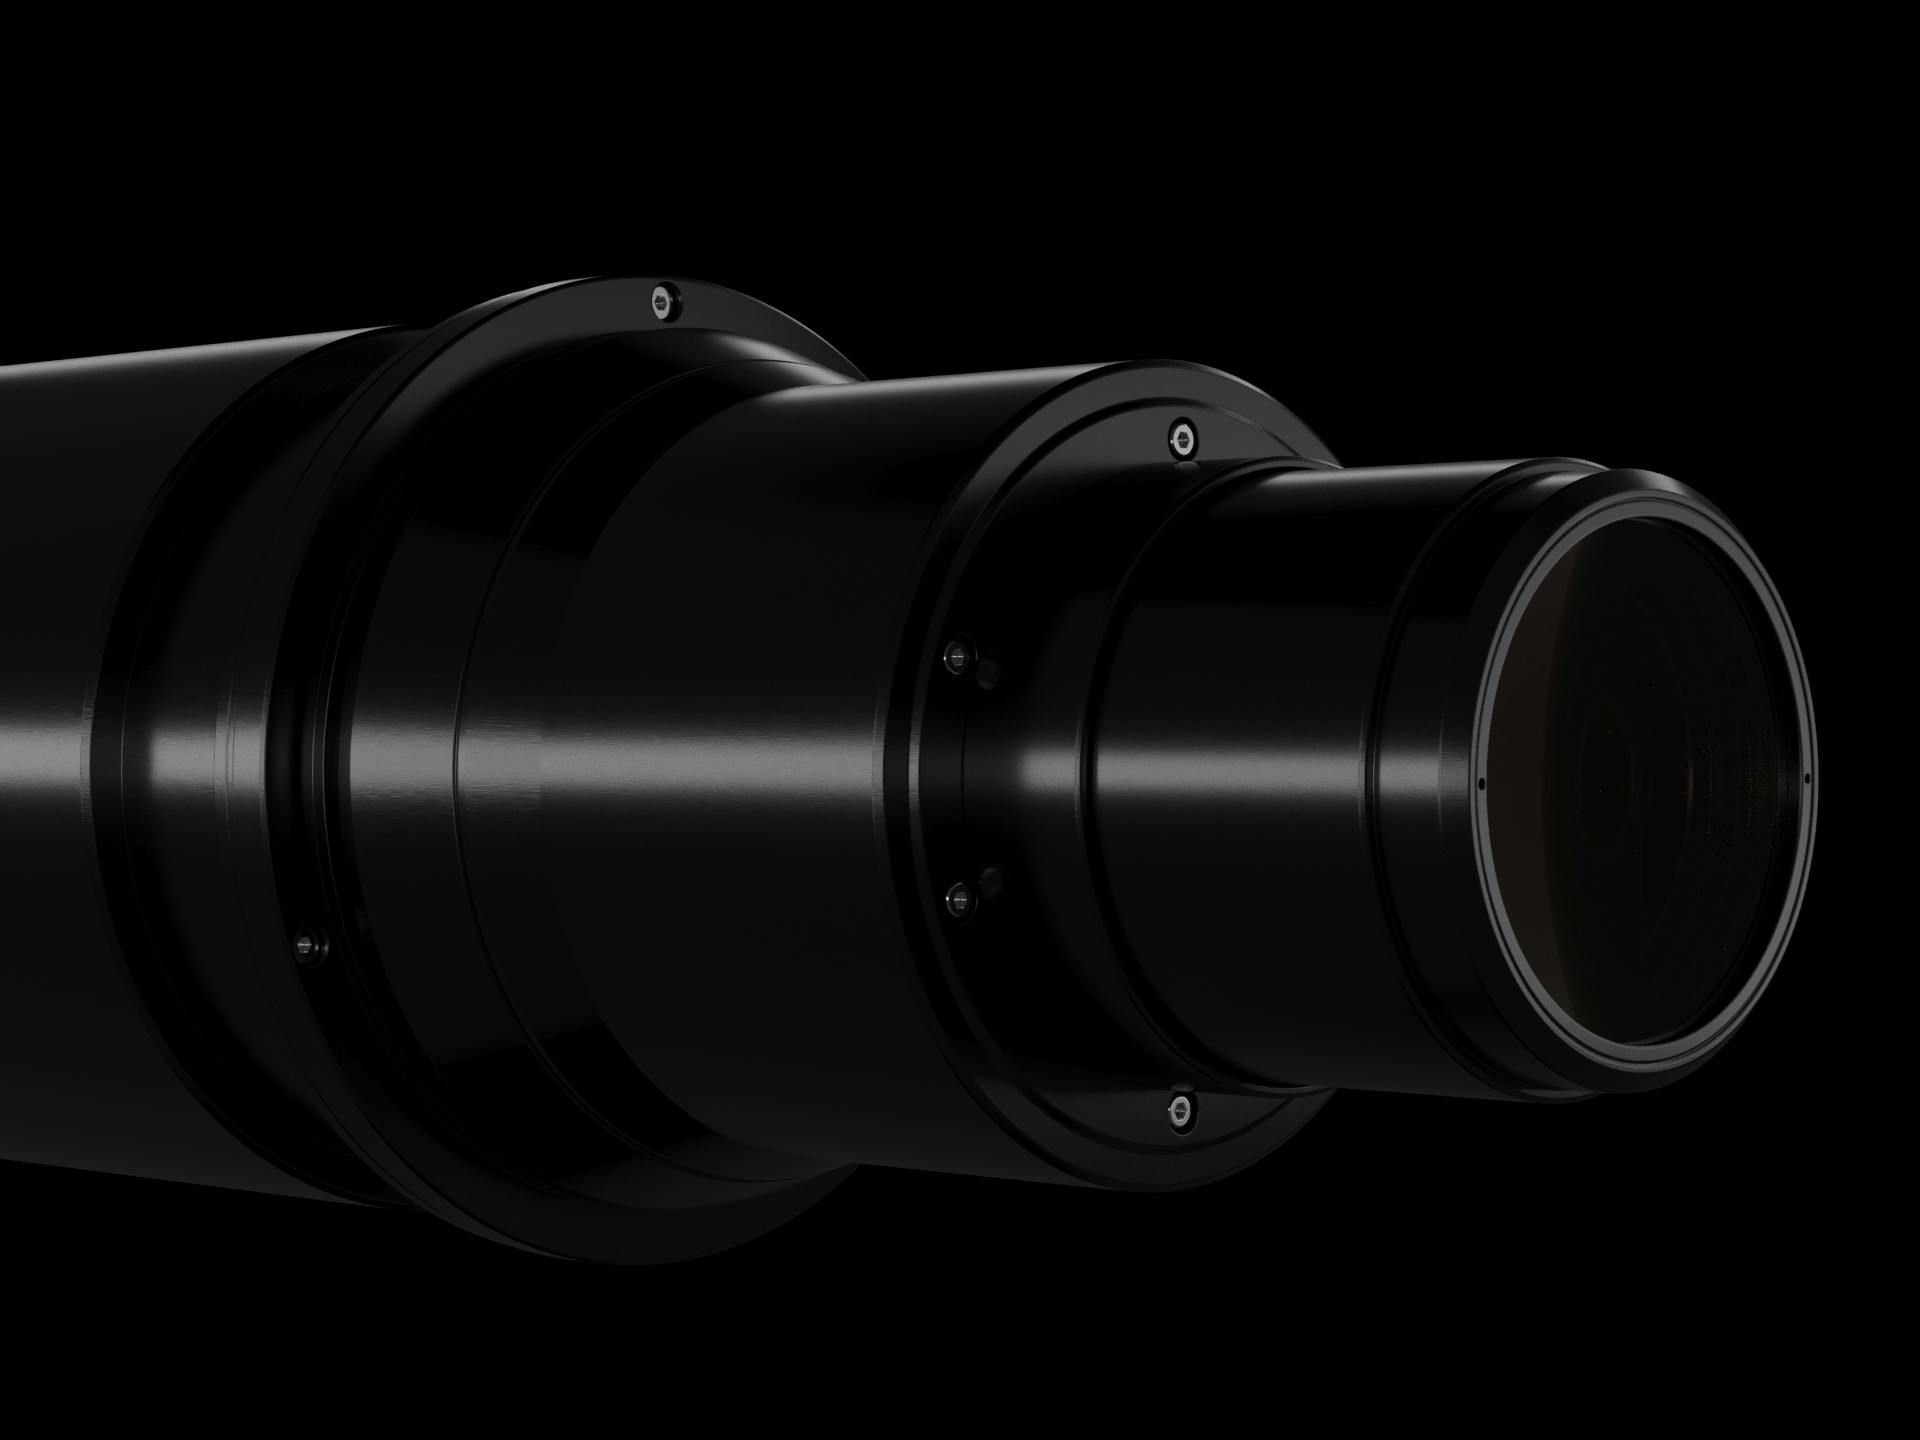 optical lense system Athene